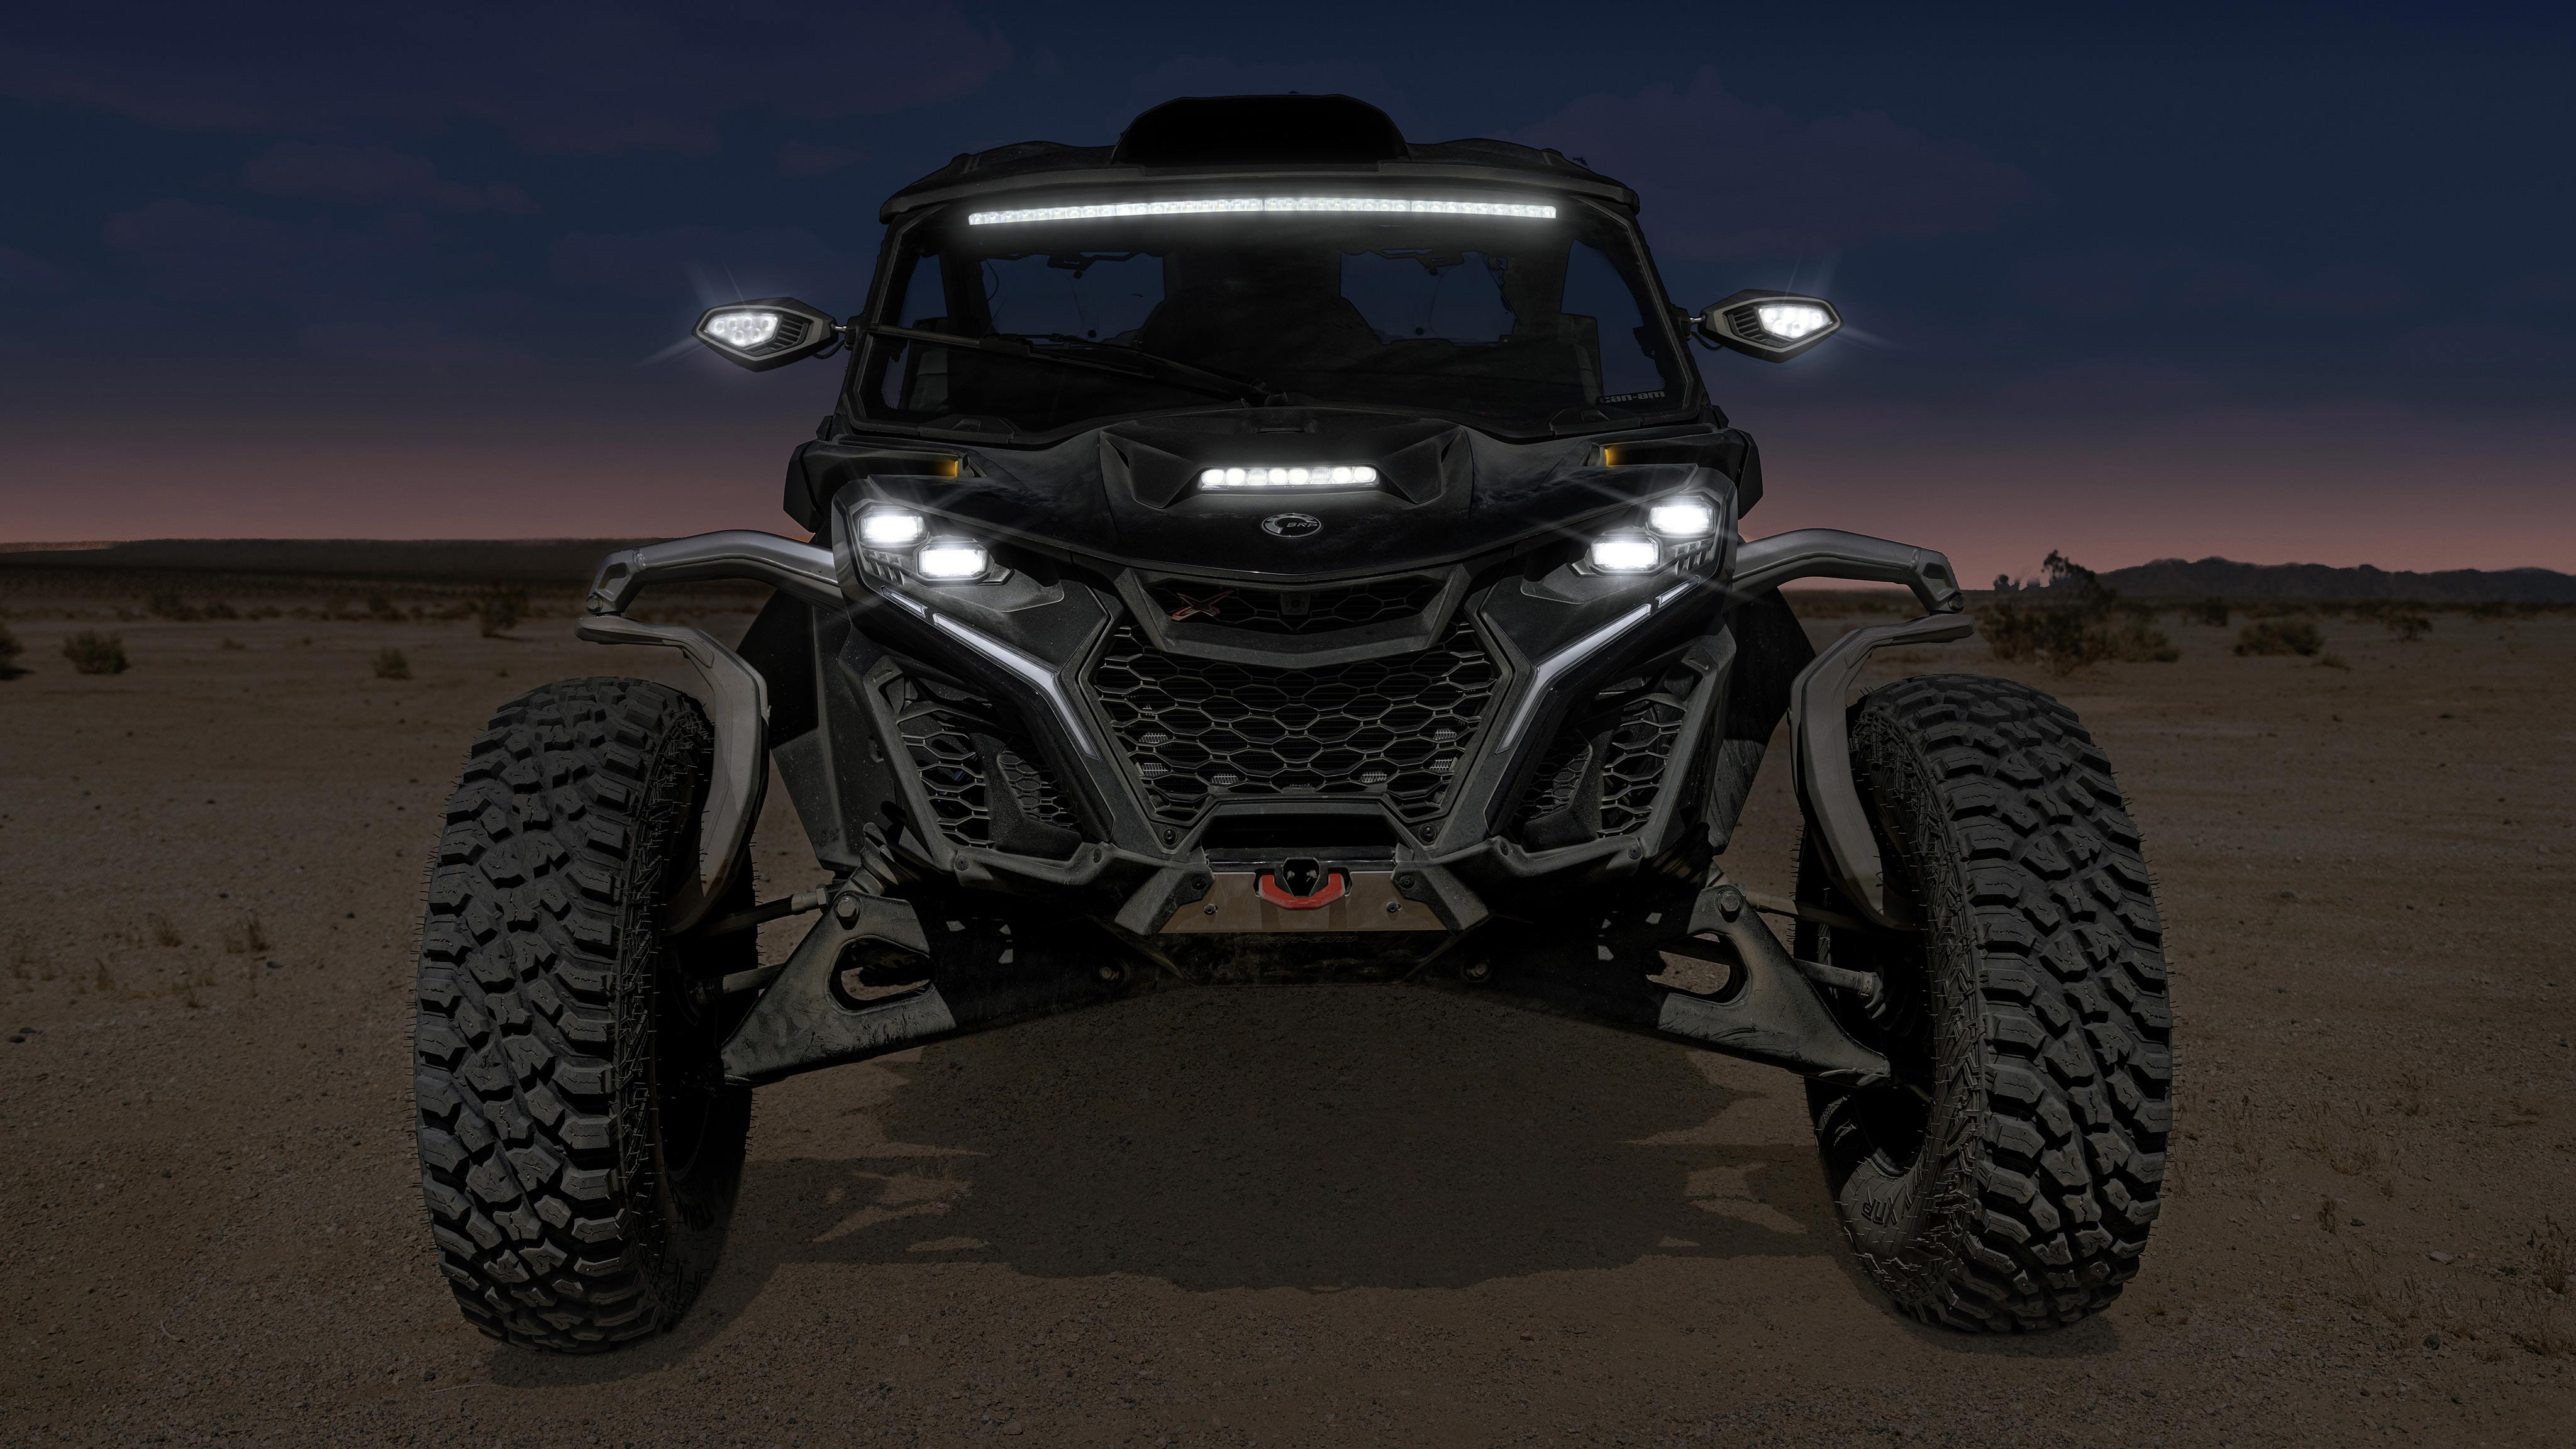 Le nouveau véhicule Maverick R SxS dans le désert nocturne